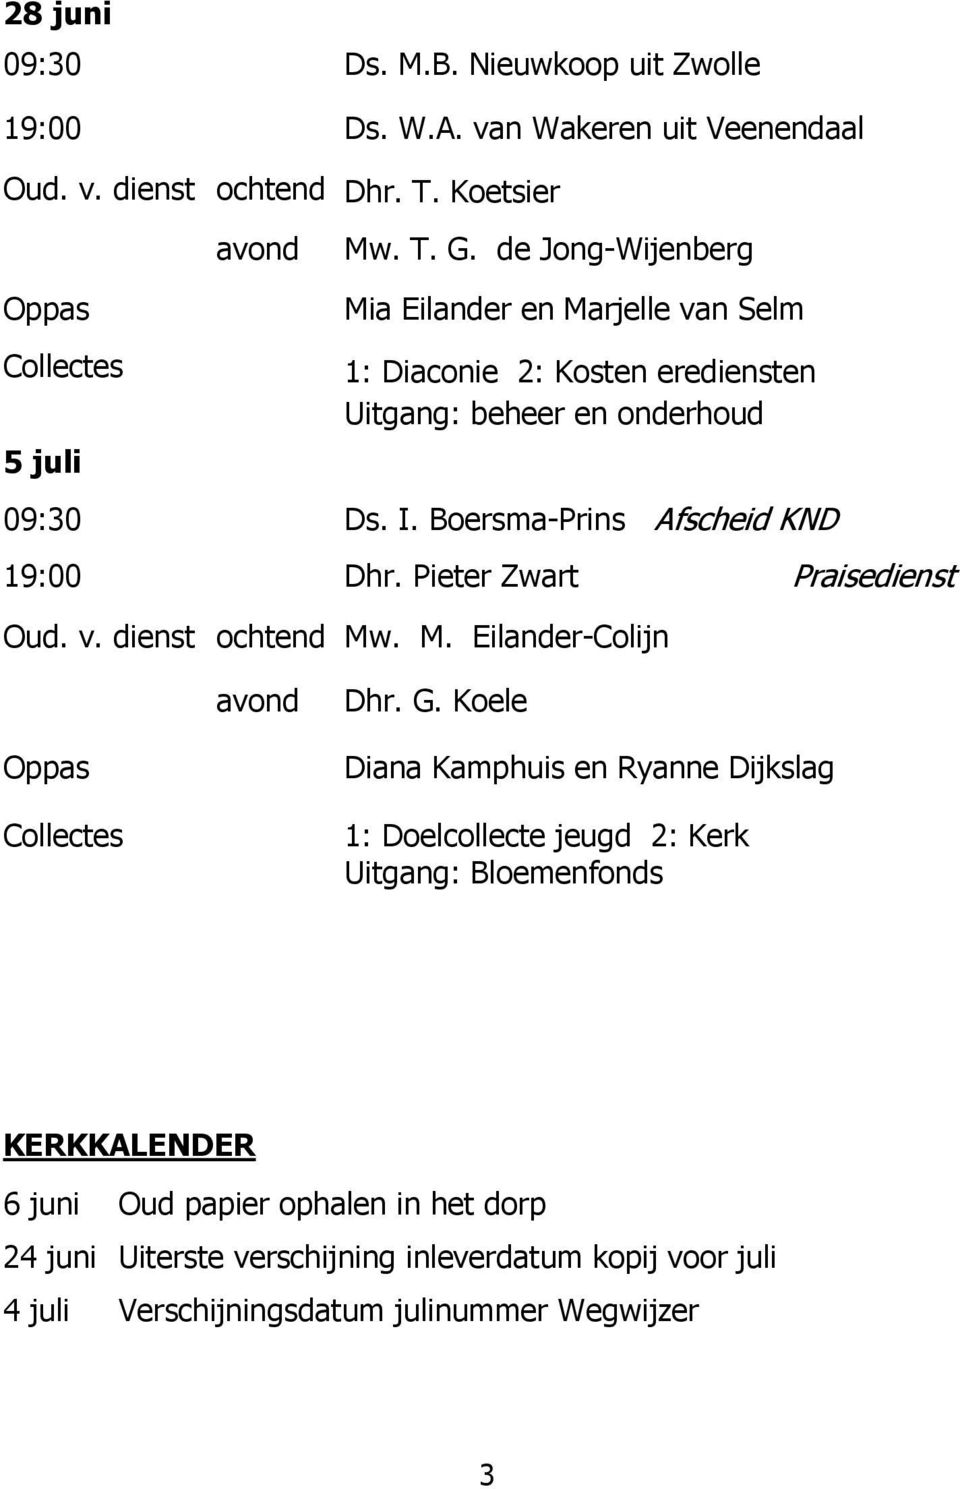 Boersma-Prins Afscheid KND 19:00 Dhr. Pieter Zwart Praisedienst Oud. v. dienst ochtend Mw. M. Eilander-Colijn avond Dhr. G.